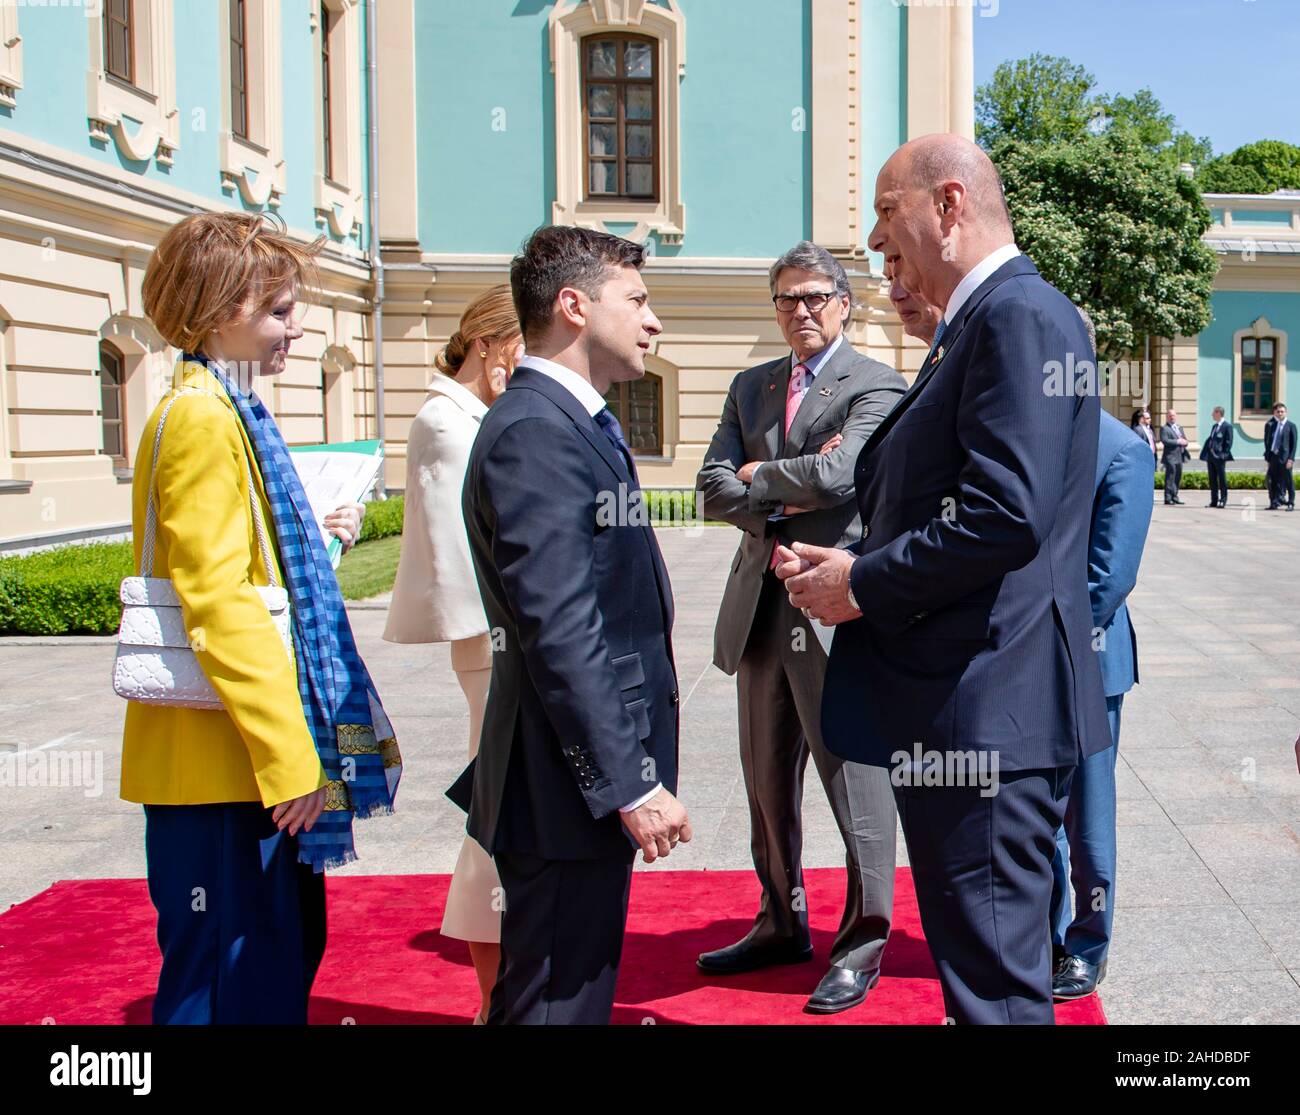 Der Präsident der Ukraine Volodymyr Zelensky, Mitte, schüttelt Hände mit US-Amb. zur Europäischen Union Gordon Sondland, rechts, als US-Energieminister Rick Perry, auf sieht, nach seiner Amtseinführung vor dem Präsidentenpalast - 20. Mai 2019 in Kiew, Ukraine. Stockfoto